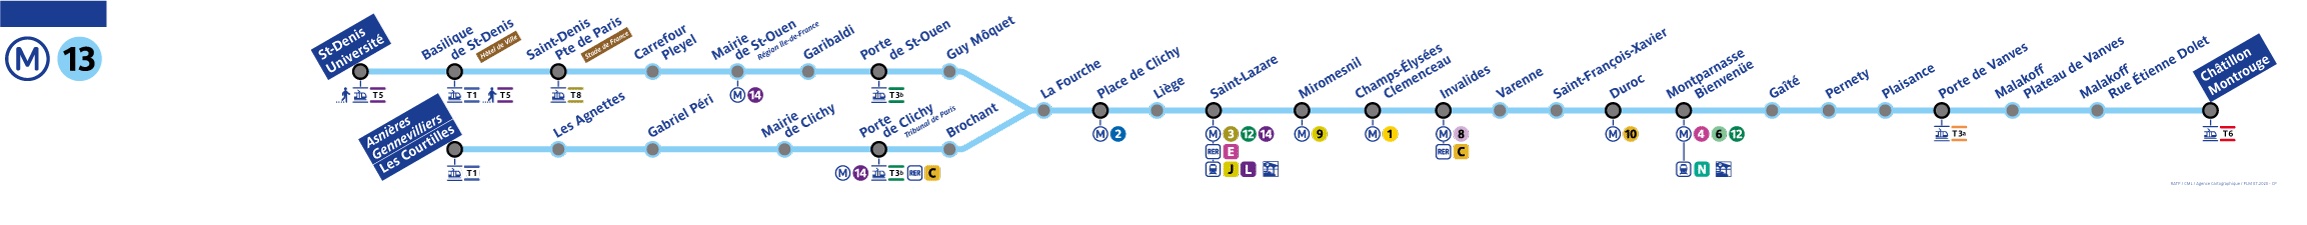 plan ligne 13 metro paris